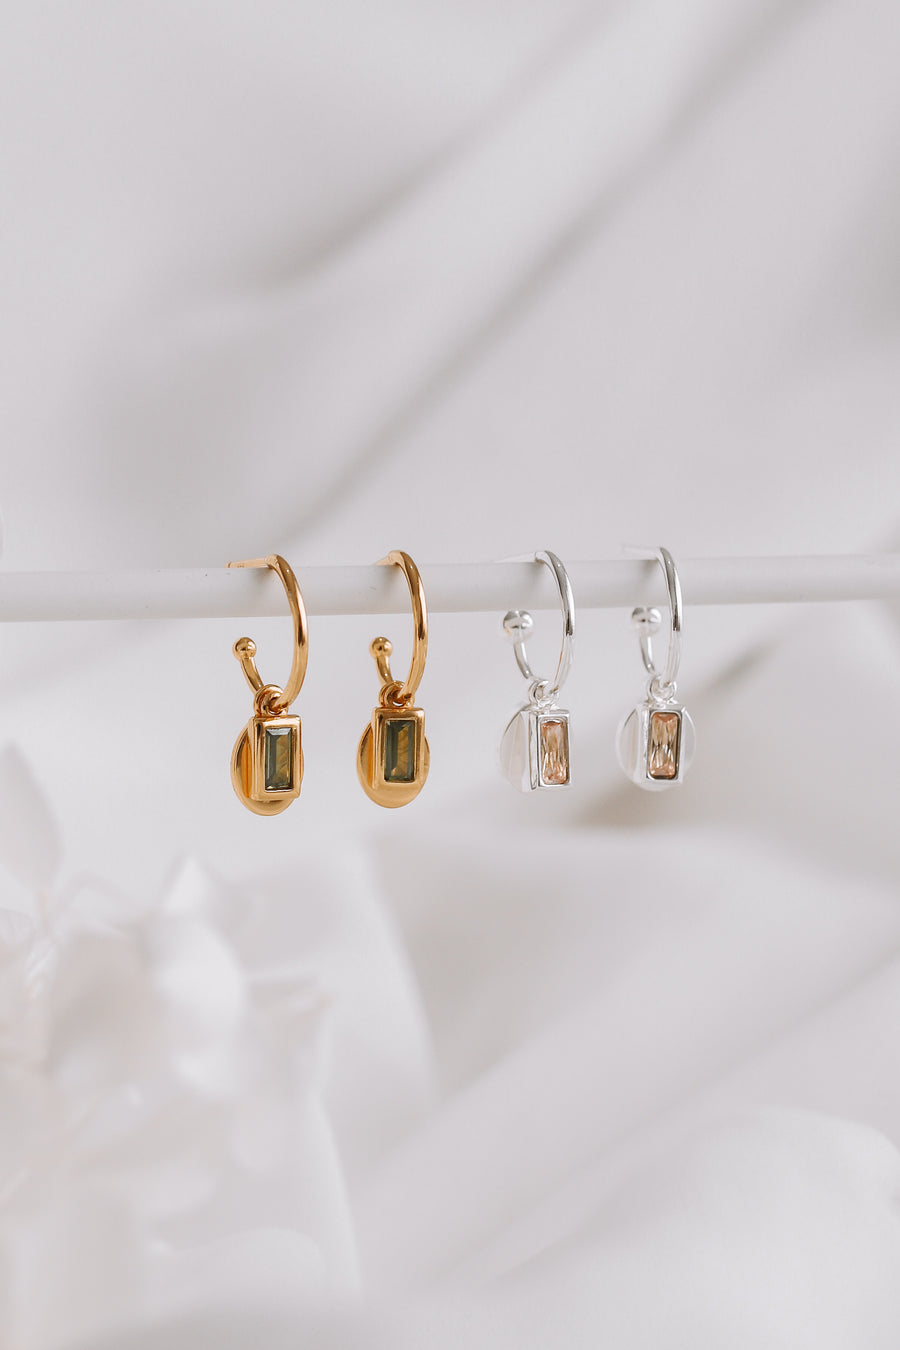 Carmela - Gold or Silver Stainless Steel Monogram Earrings